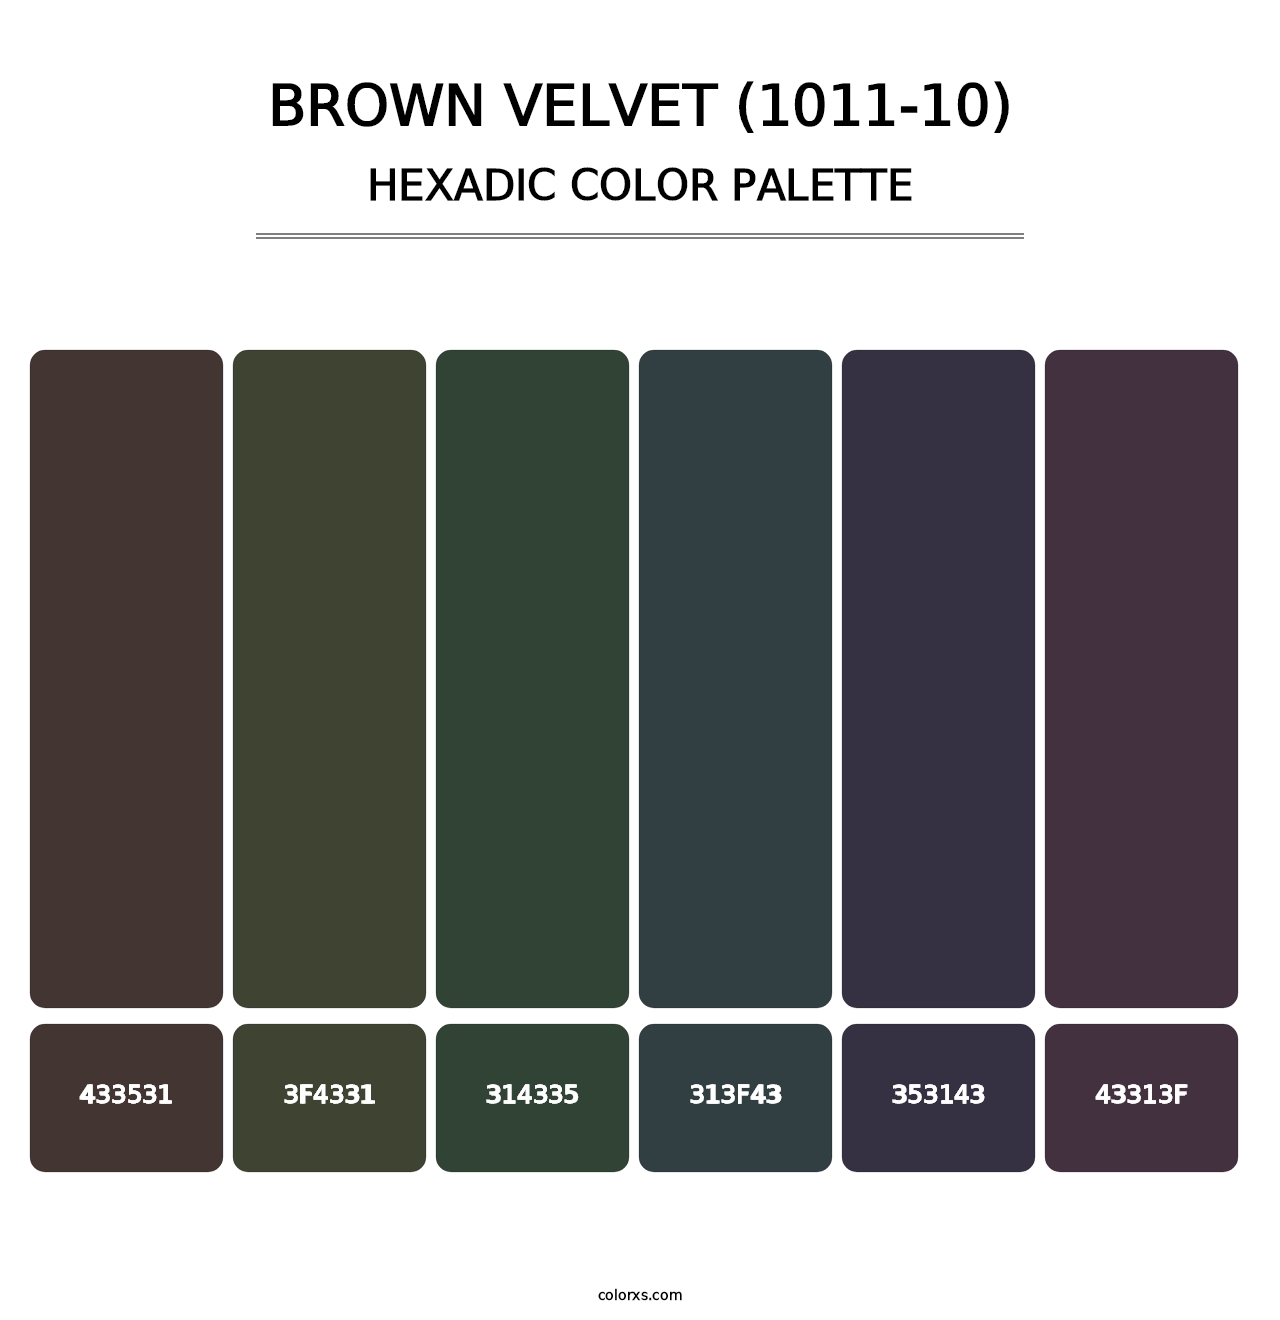 Brown Velvet (1011-10) - Hexadic Color Palette